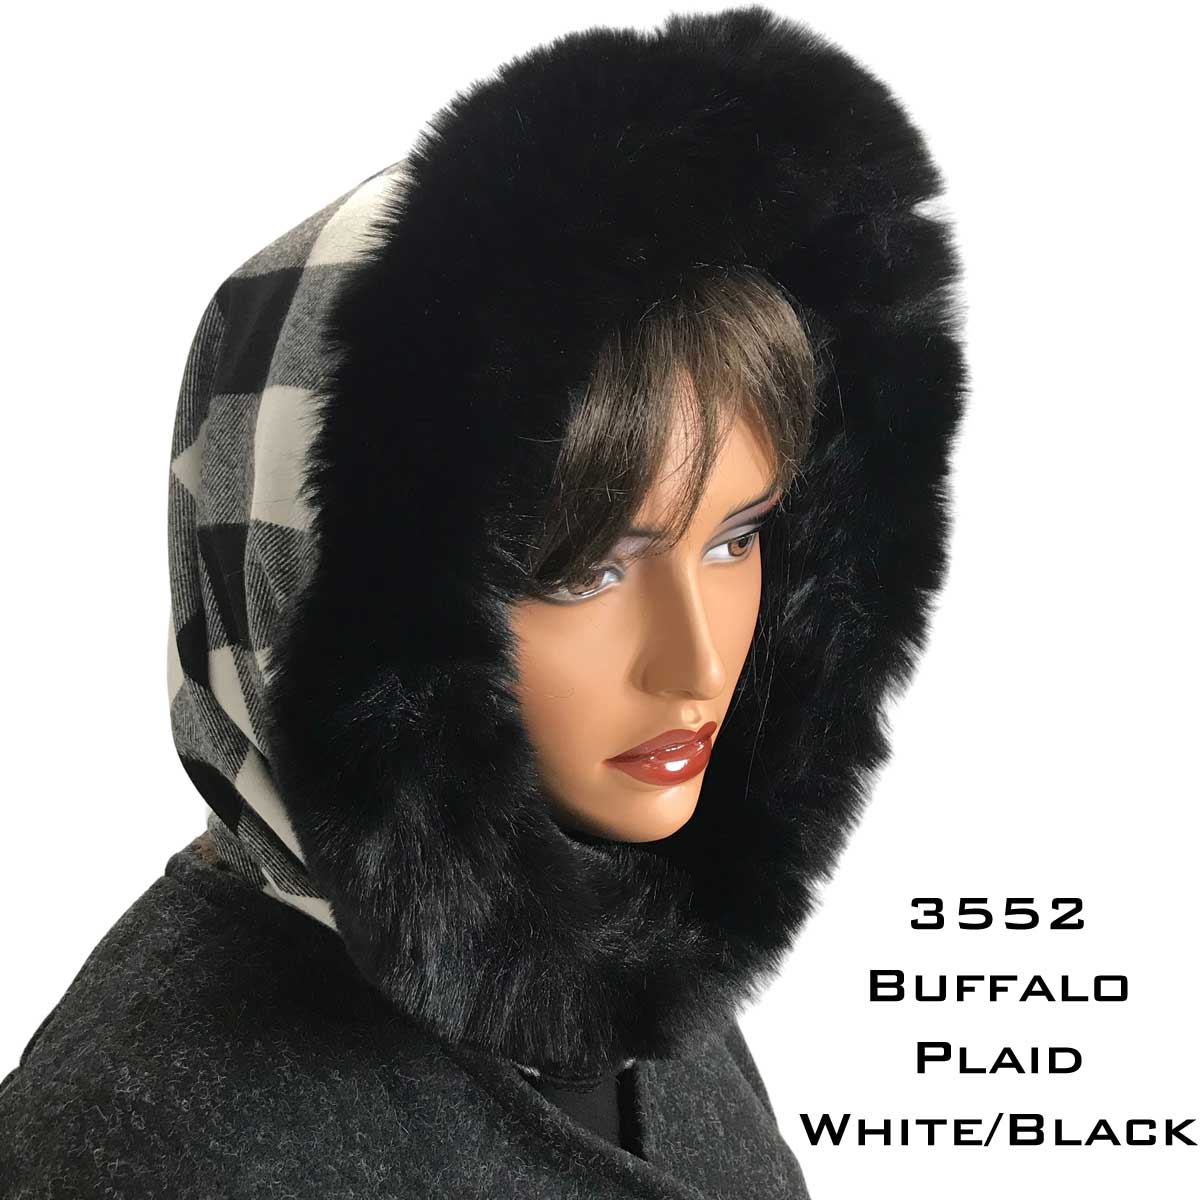 Buffalo Plaid White/Black<br> Black Fur Trimmed Infinity Hood